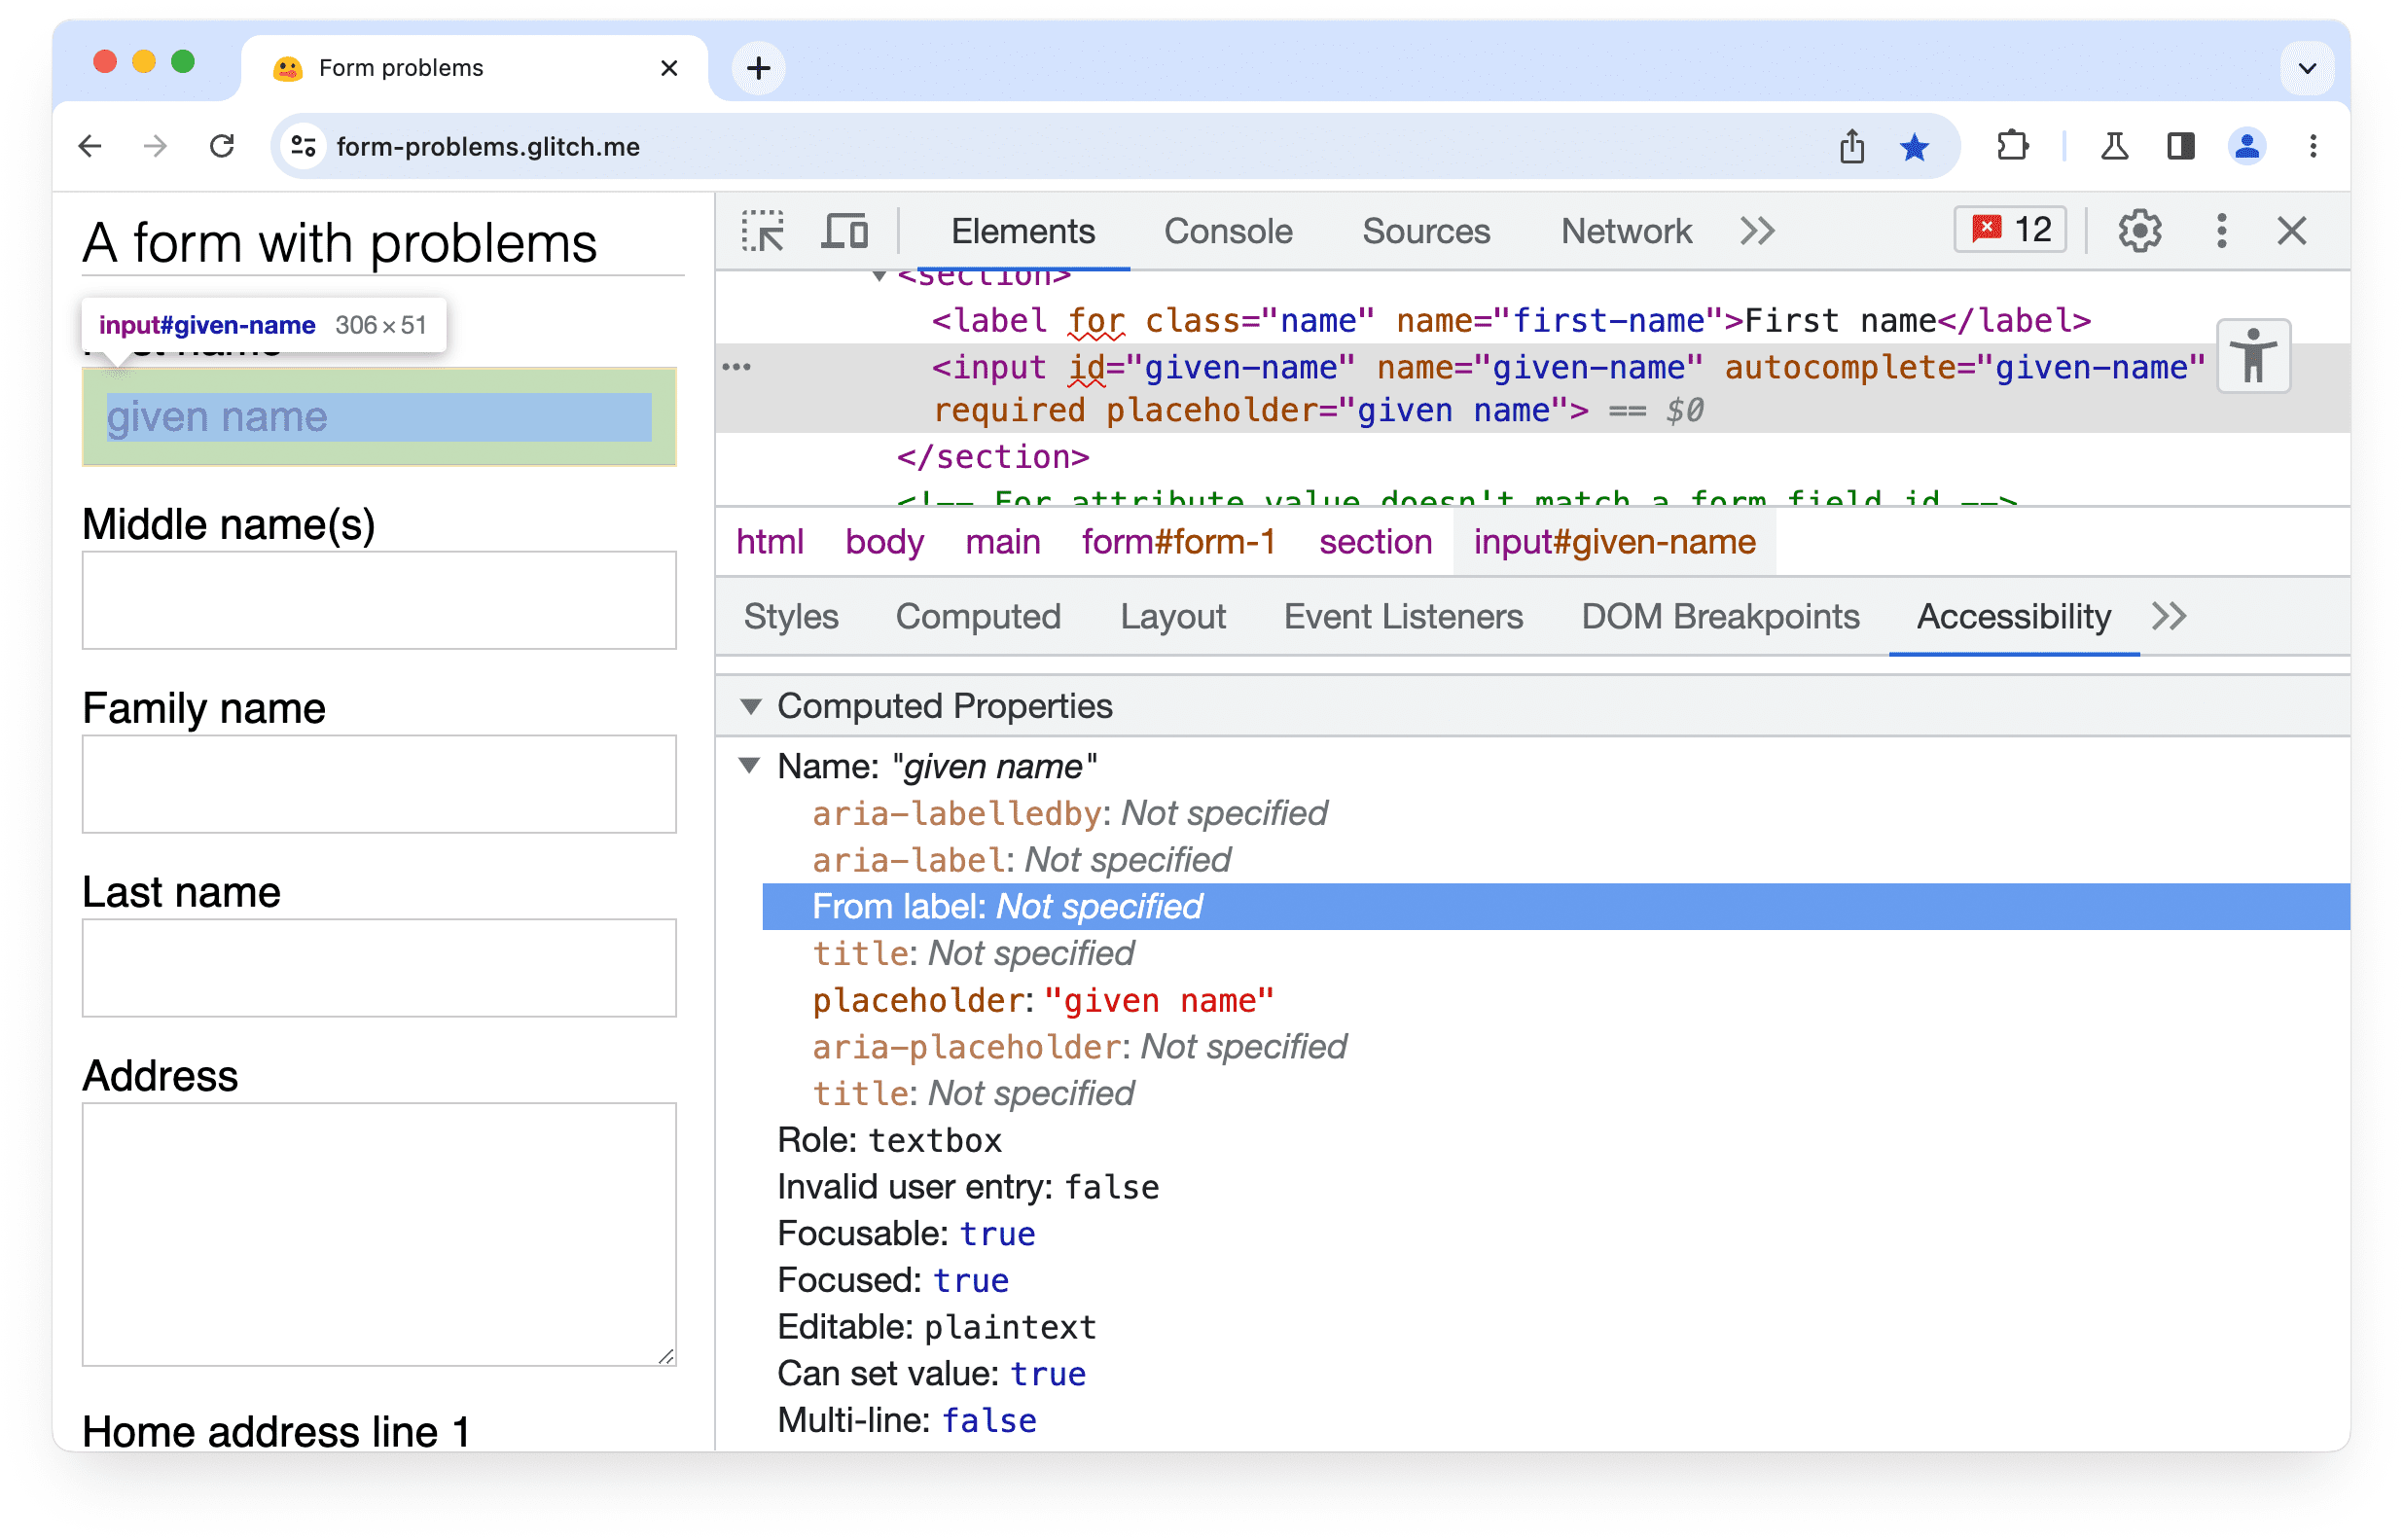 أدوات مطوّري البرامج في Chrome
لوحة تسهيل الاستخدام، توضِّح أنّه لم يتم العثور على تصنيف مطابق أو سمة aria-labelledby لعنصر إدخال في نموذج.